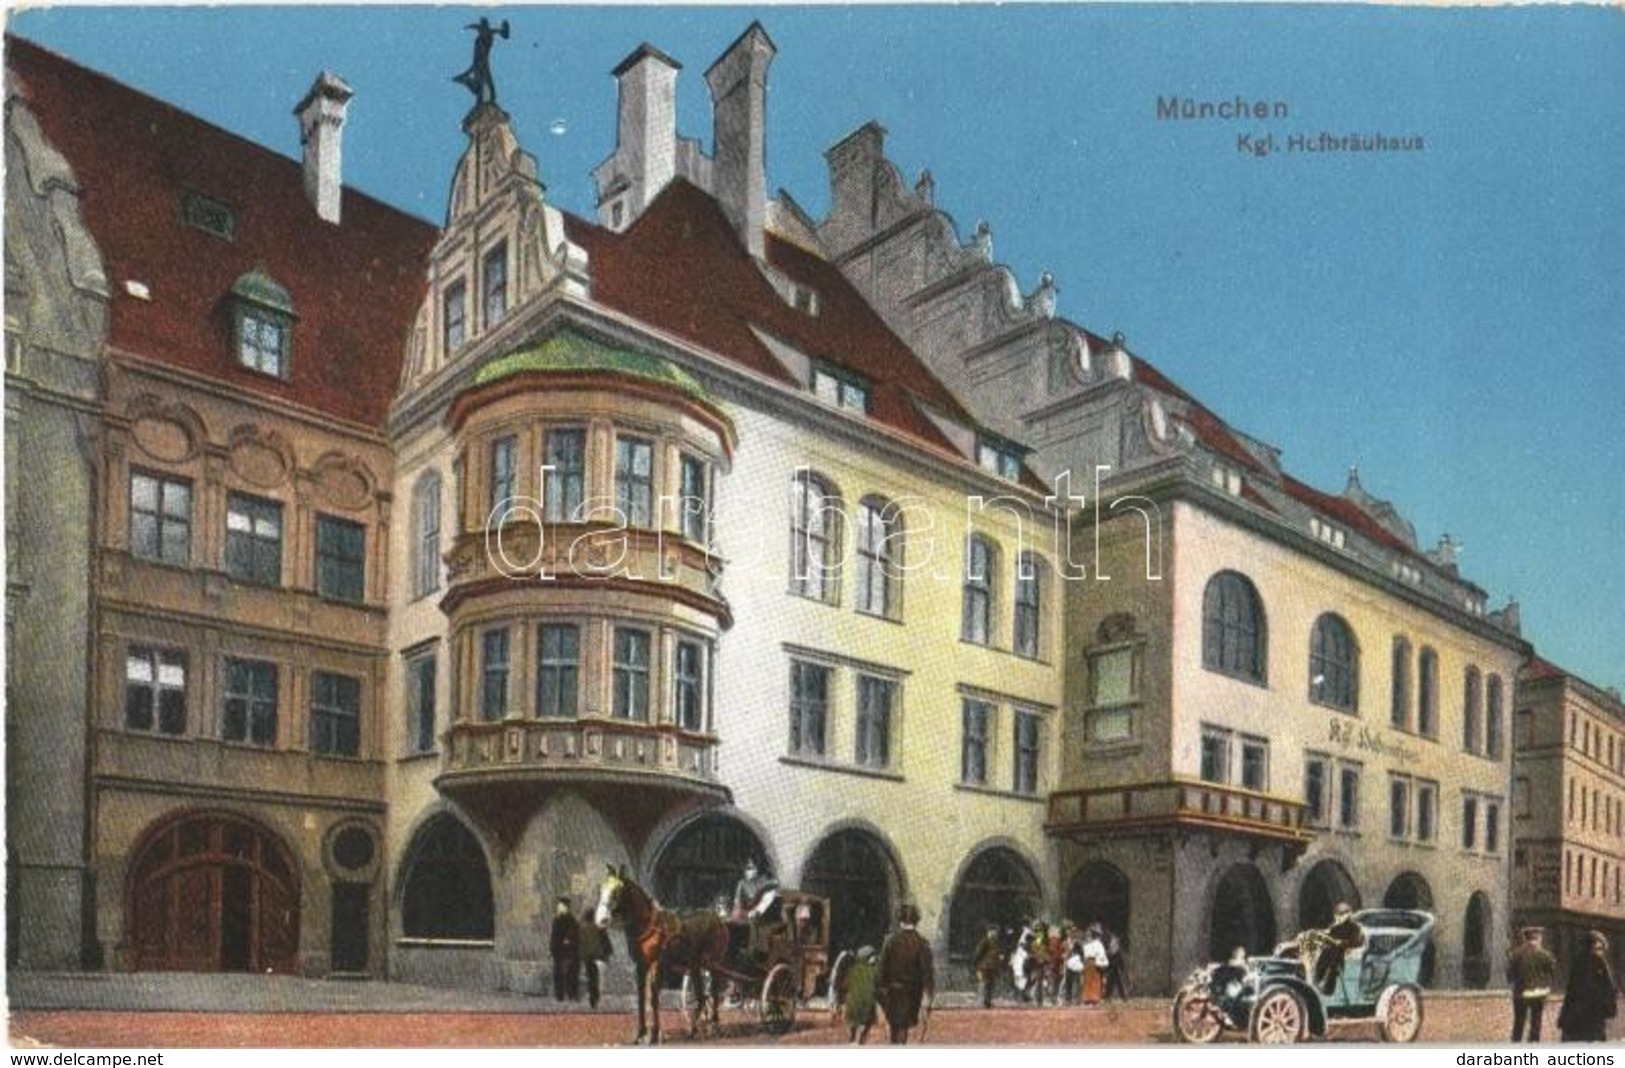 ** T1/T2 München, Munich; Kgl. Hofbrauhaus / Brewery, Automobile, Horse-drawn Carriage - Non Classés